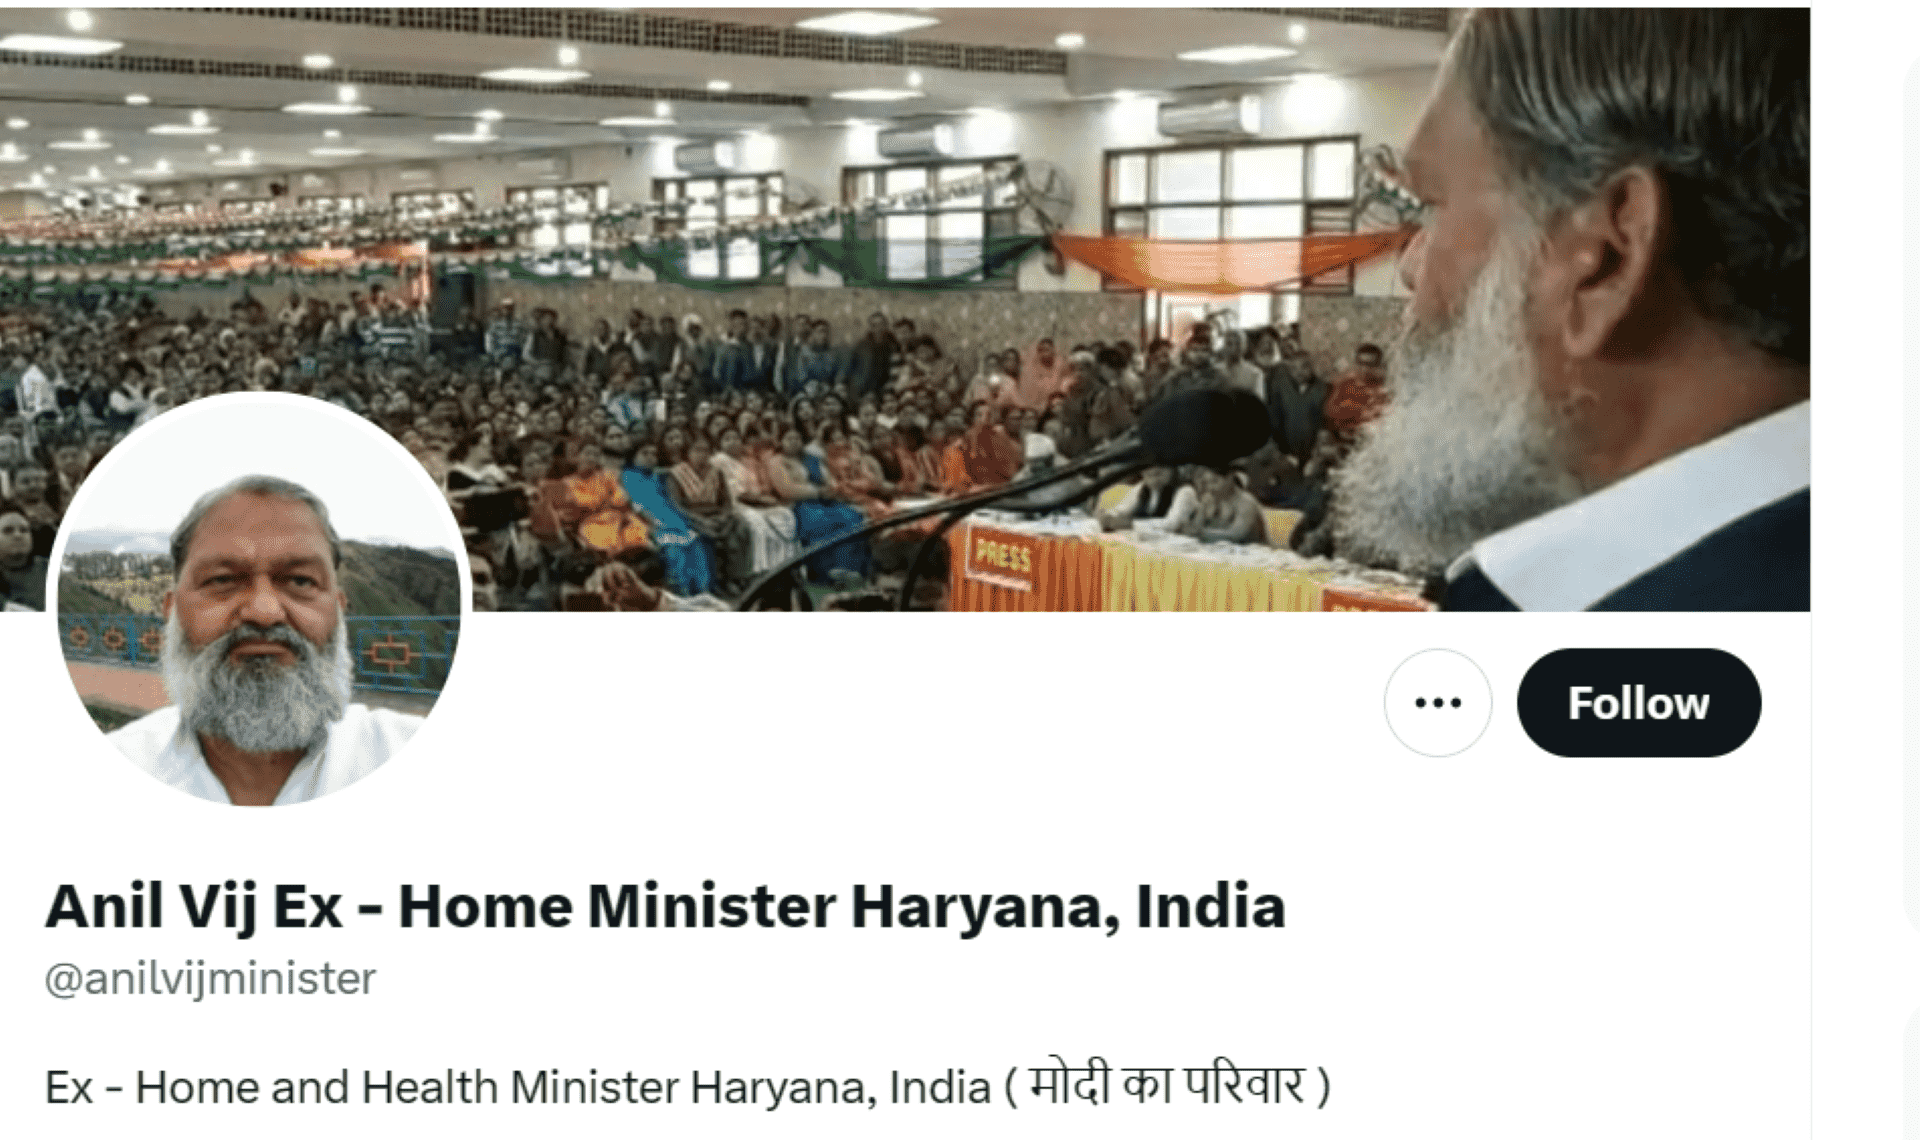 Haryana Politics in Flux: Former Minister Vij Removes "Modi ka Parivar" from Social Media Profile